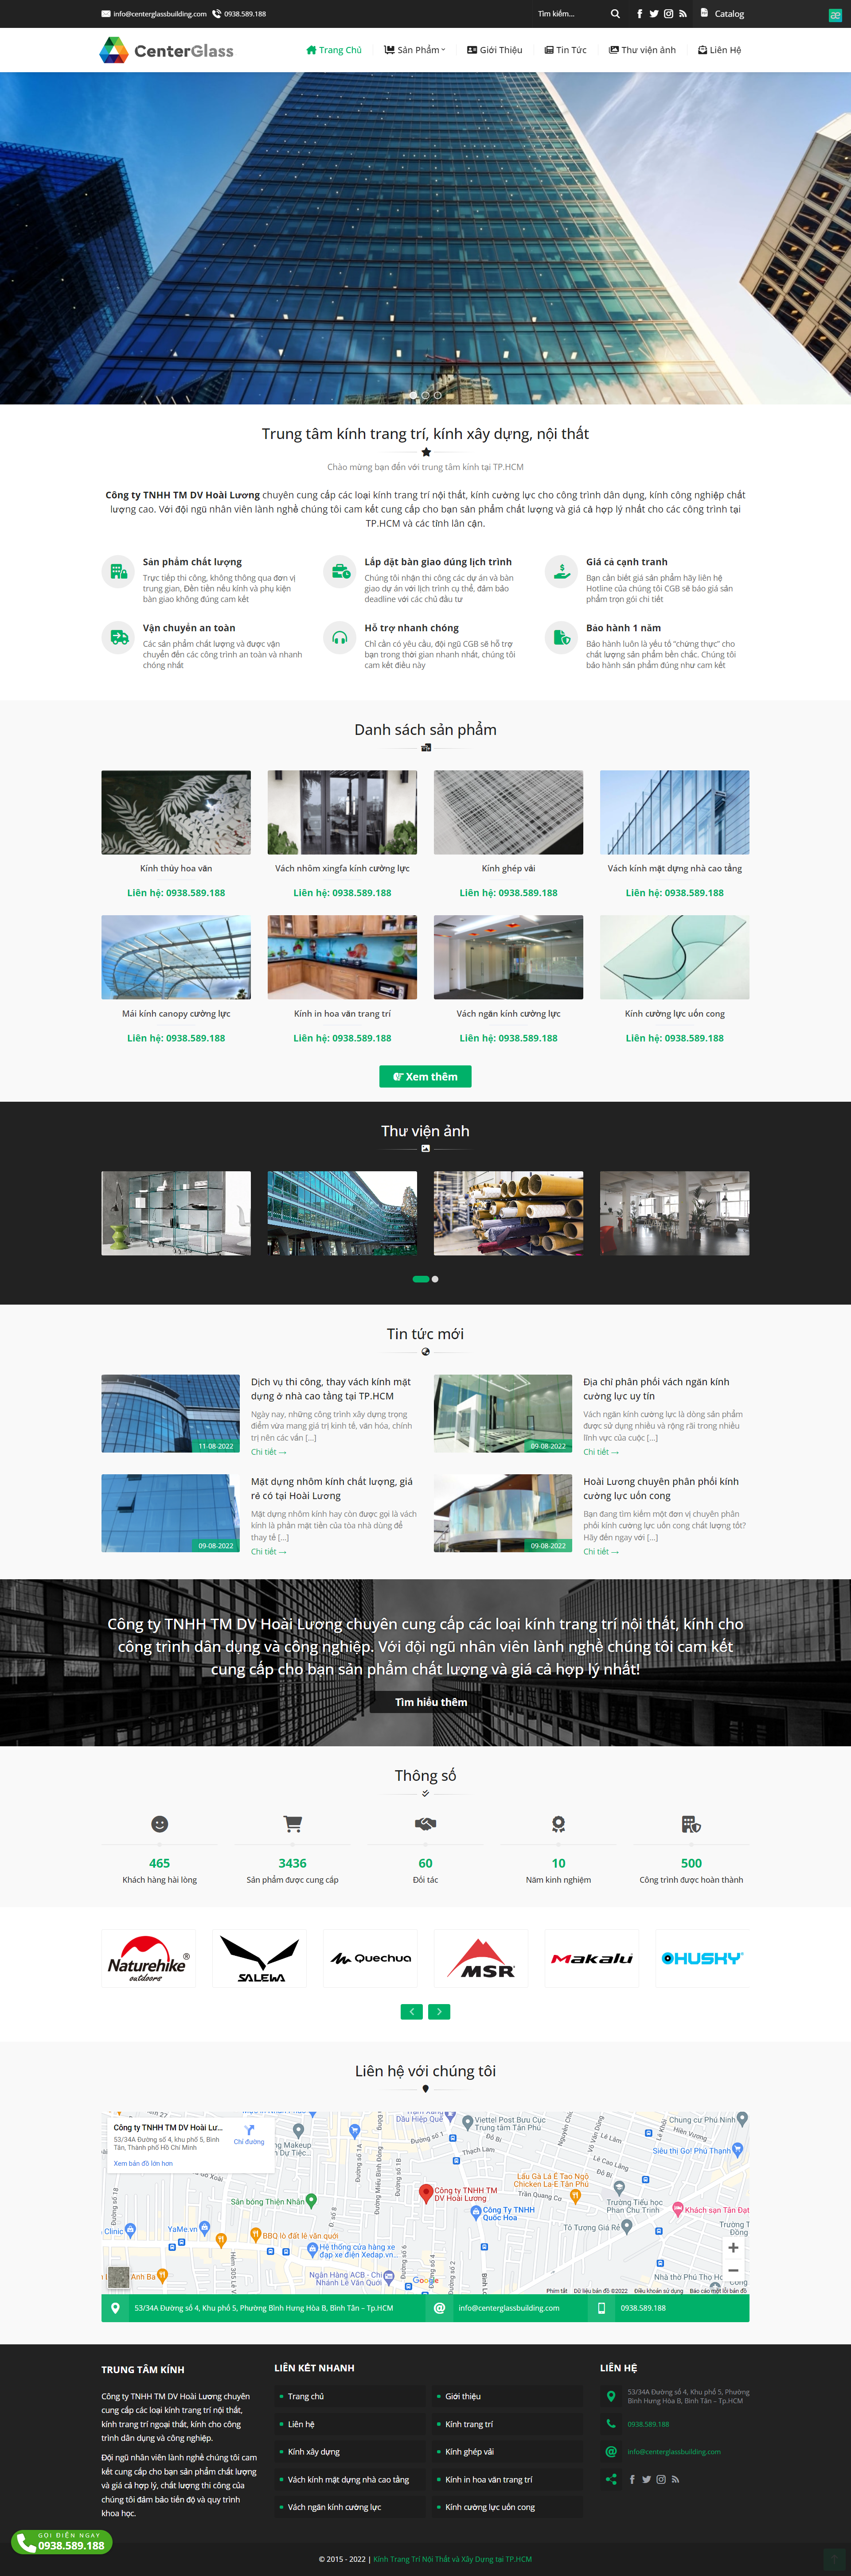 Mẫu website giới thiệu công ty – Trung tâm kính xây dựng